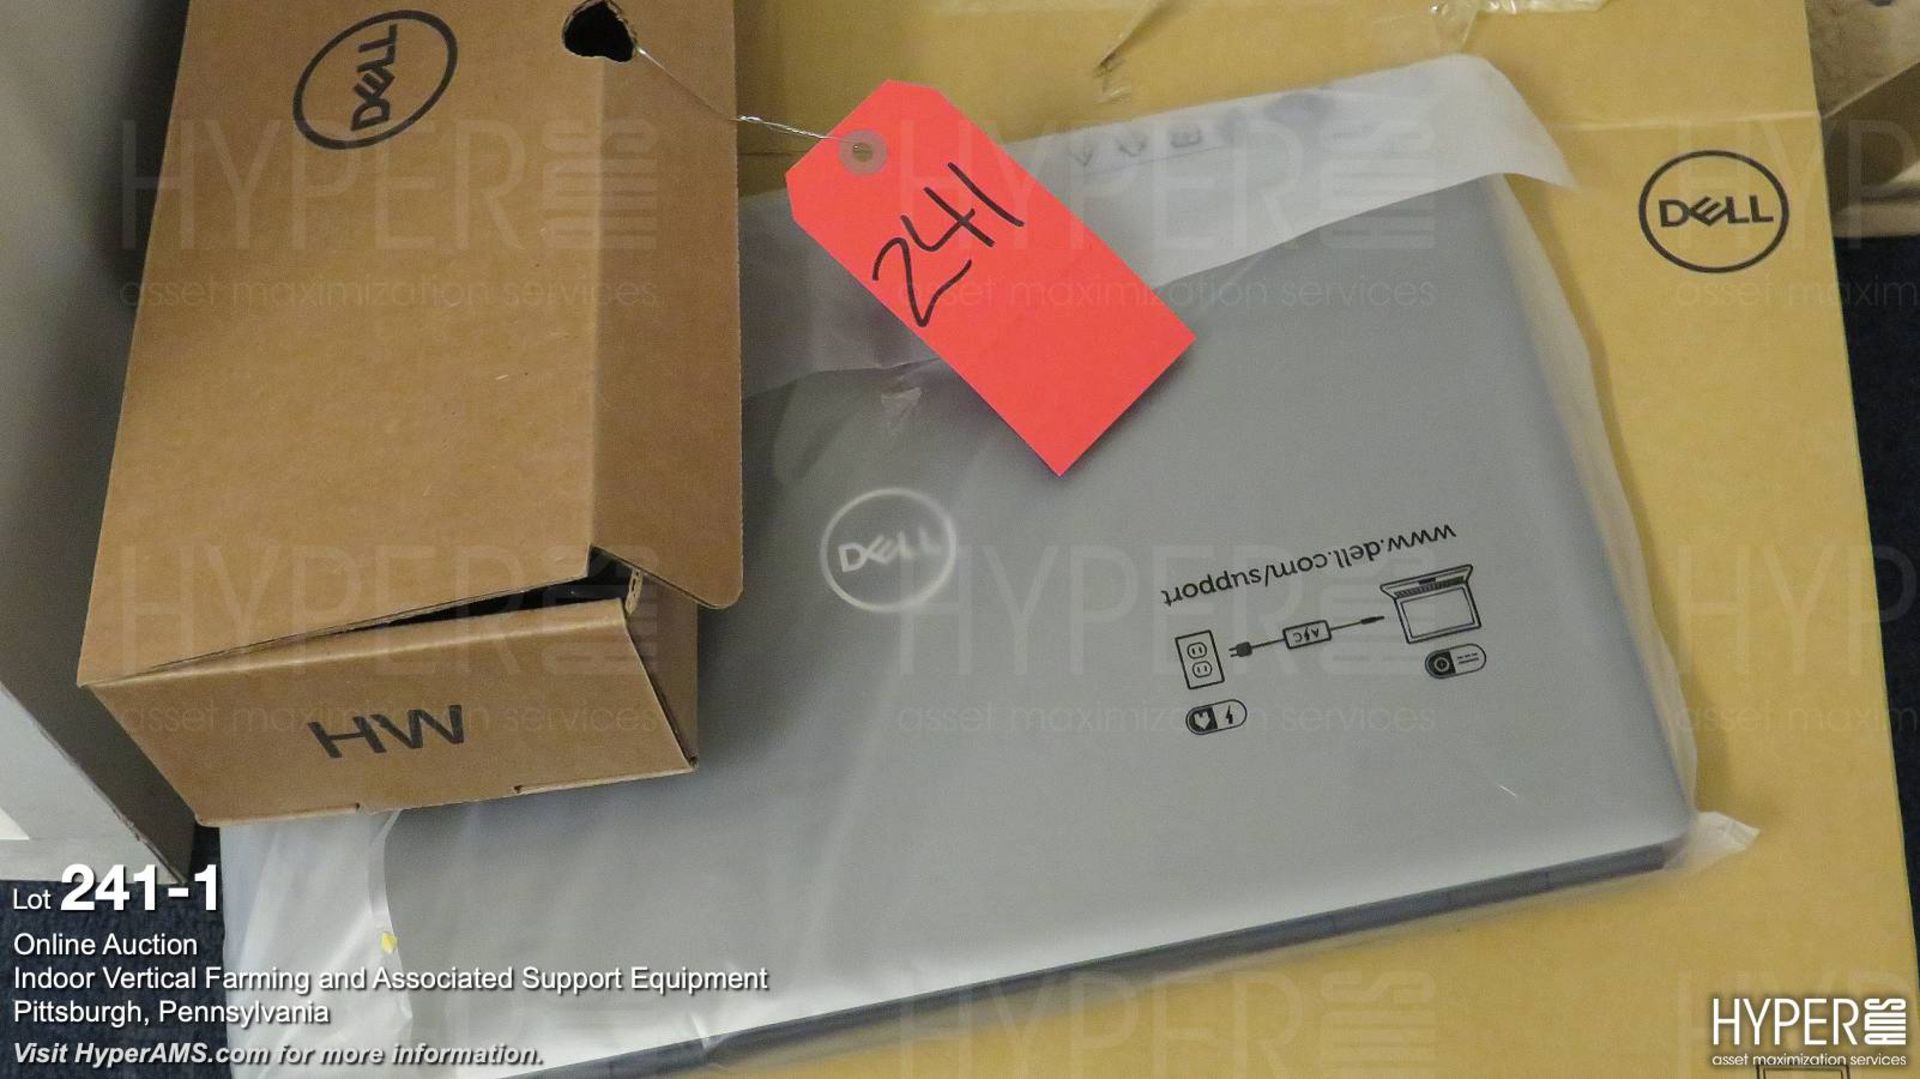 New Dell Precision 7750 laptop